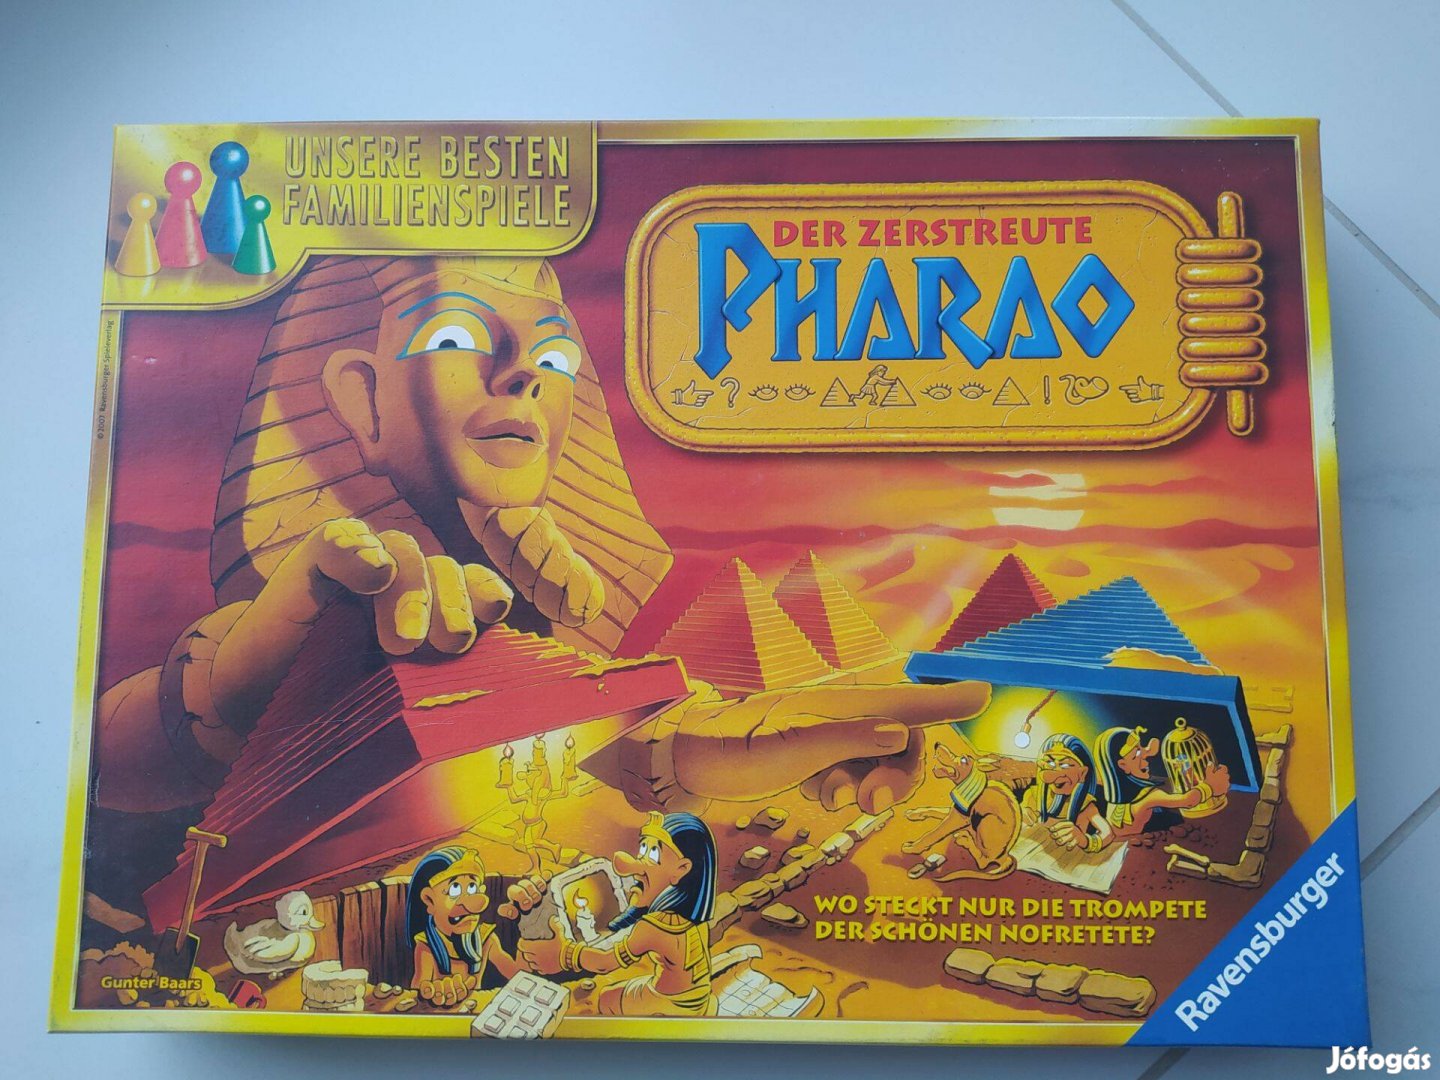 Pharao társasjáték hiánytalan szép állapotban